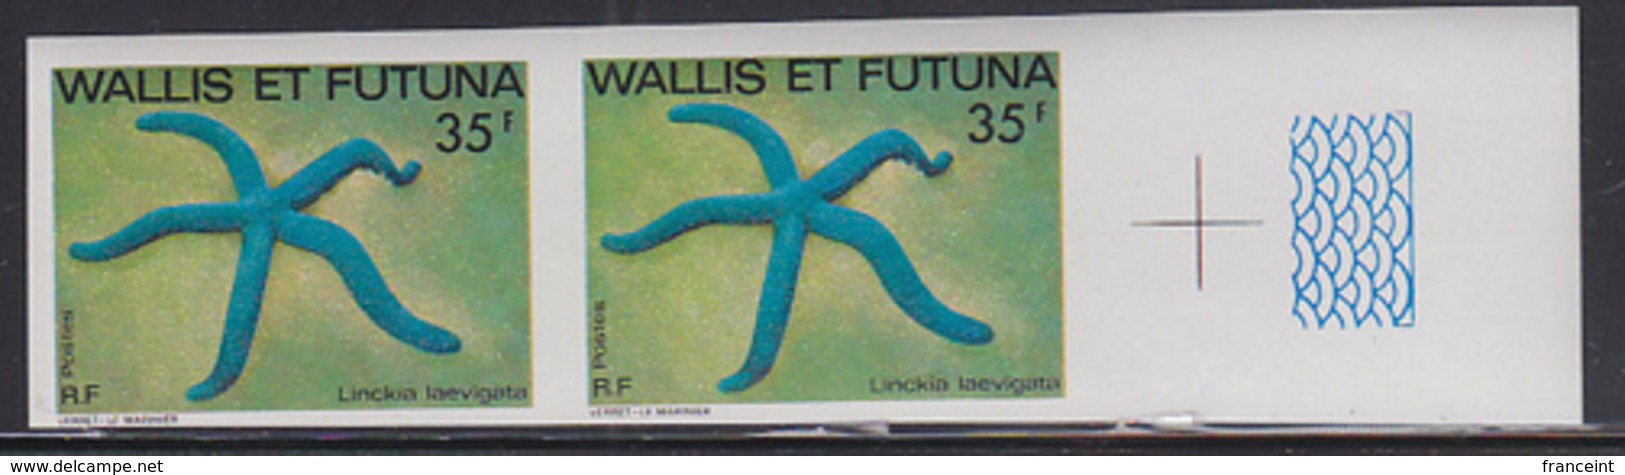 WALLIS & FUTUNA (1982) Blue Star (Linckia Laevigata). Imperforate Pair. Scott No 295, Yvert No 298. - Sin Dentar, Pruebas De Impresión Y Variedades